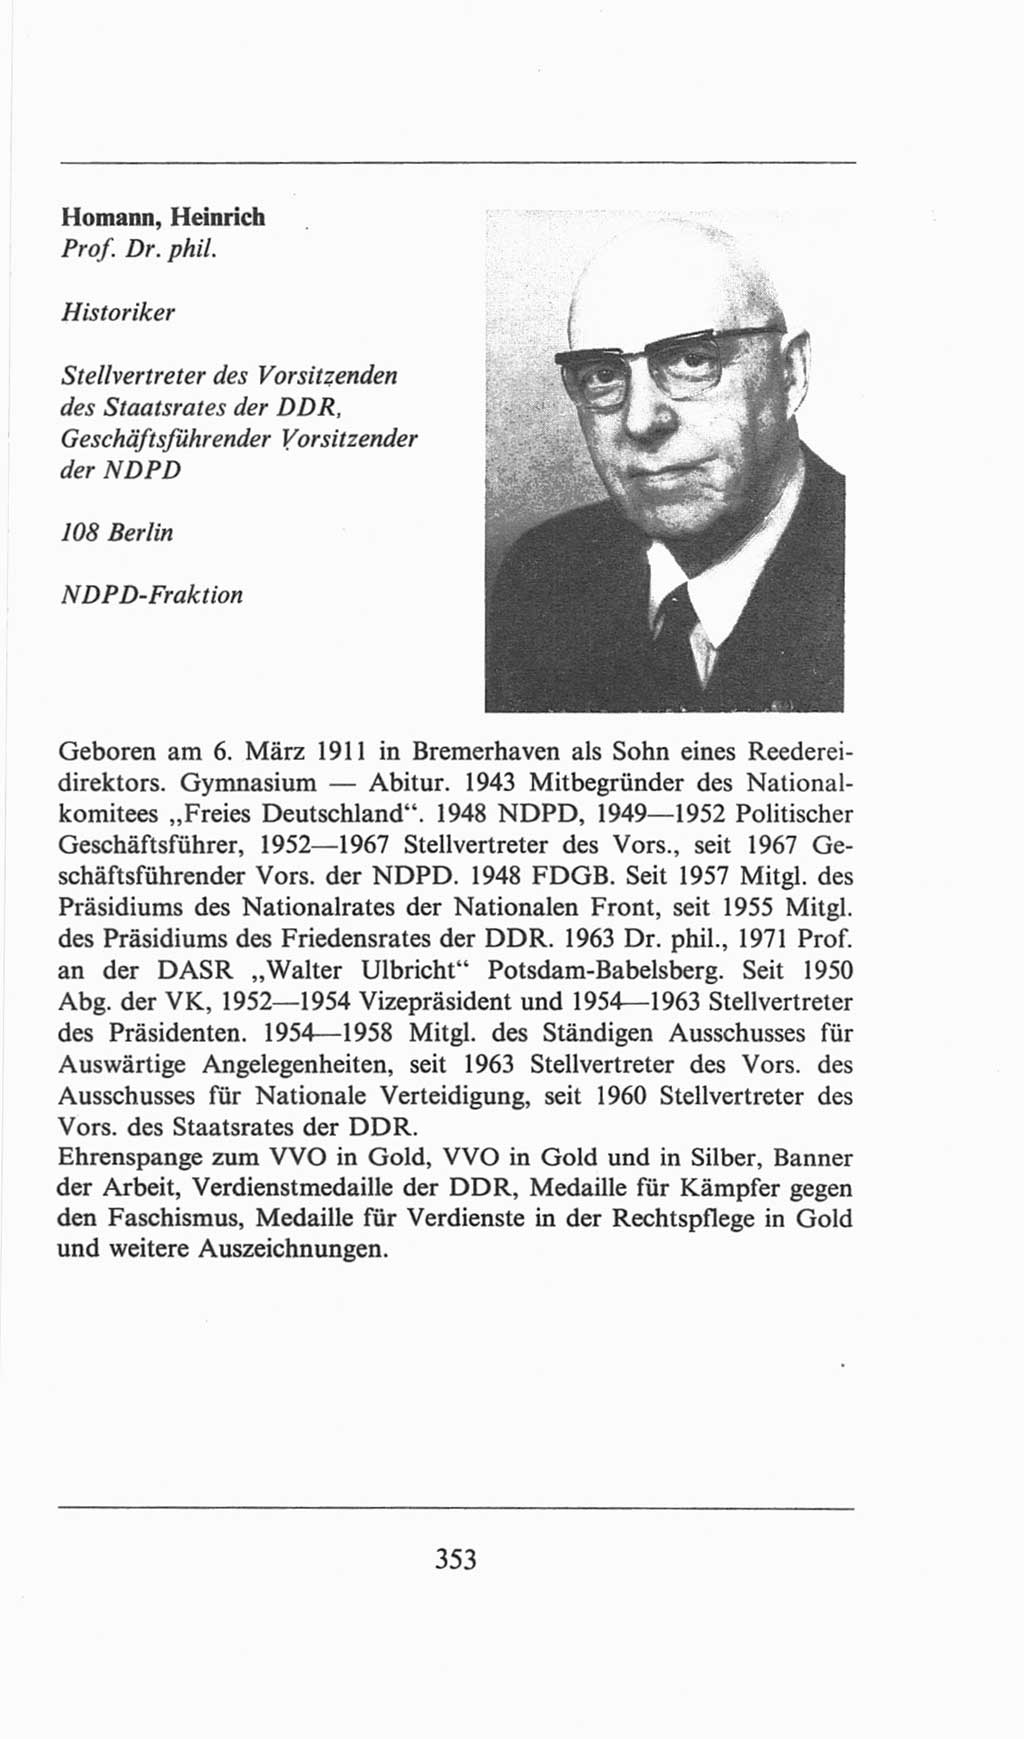 Volkskammer (VK) der Deutschen Demokratischen Republik (DDR), 6. Wahlperiode 1971-1976, Seite 353 (VK. DDR 6. WP. 1971-1976, S. 353)